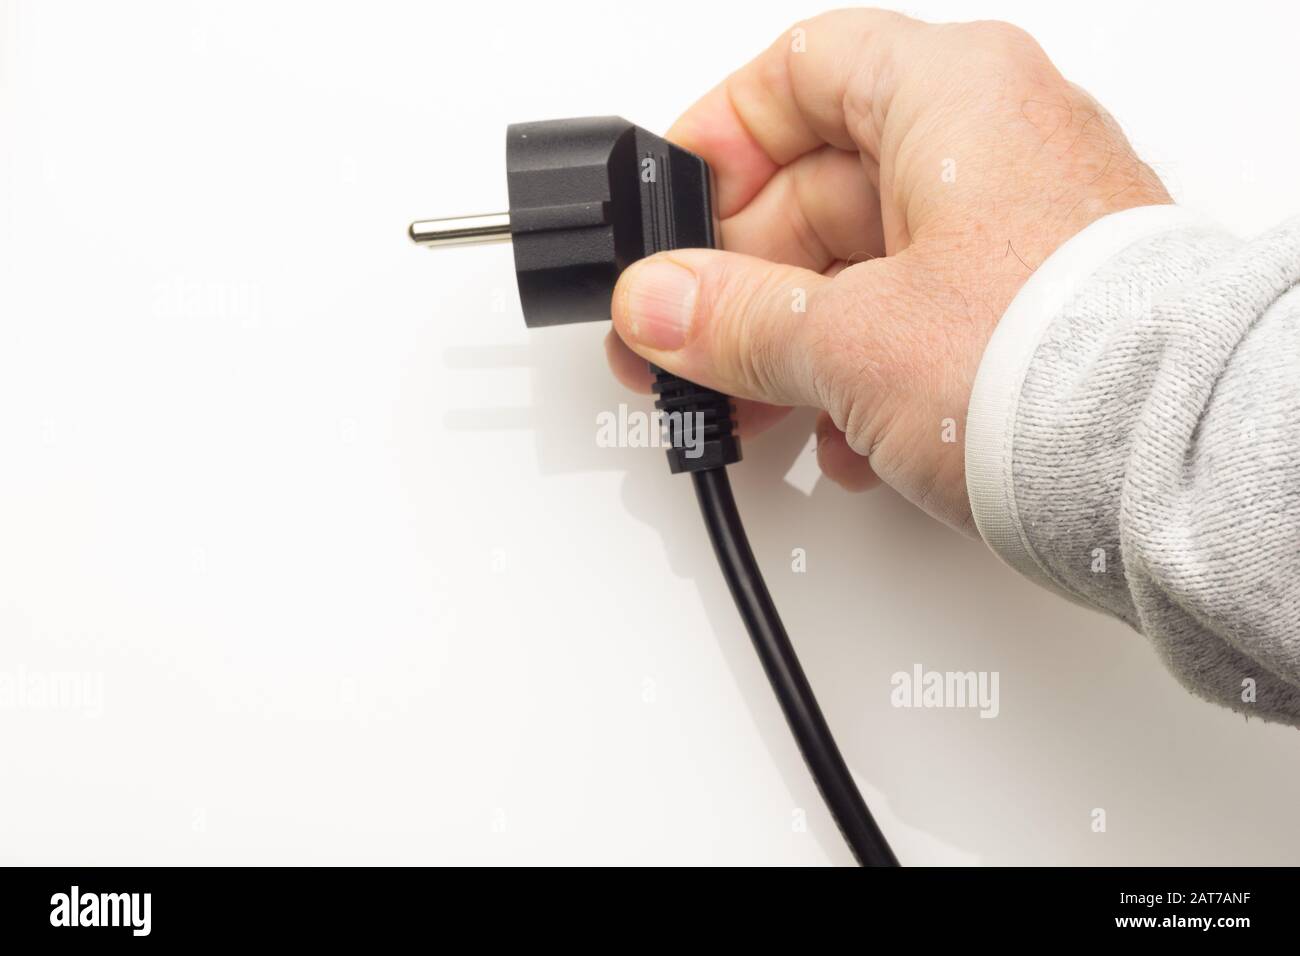 Kabel mit Elektrostecker, der in den elektrischen Strom einstecken kann und  ein Gerät funktioniert; stecken Sie die Hand eines Erwachsenen ein; Stecker  für Zuhause in Europa Stockfotografie - Alamy